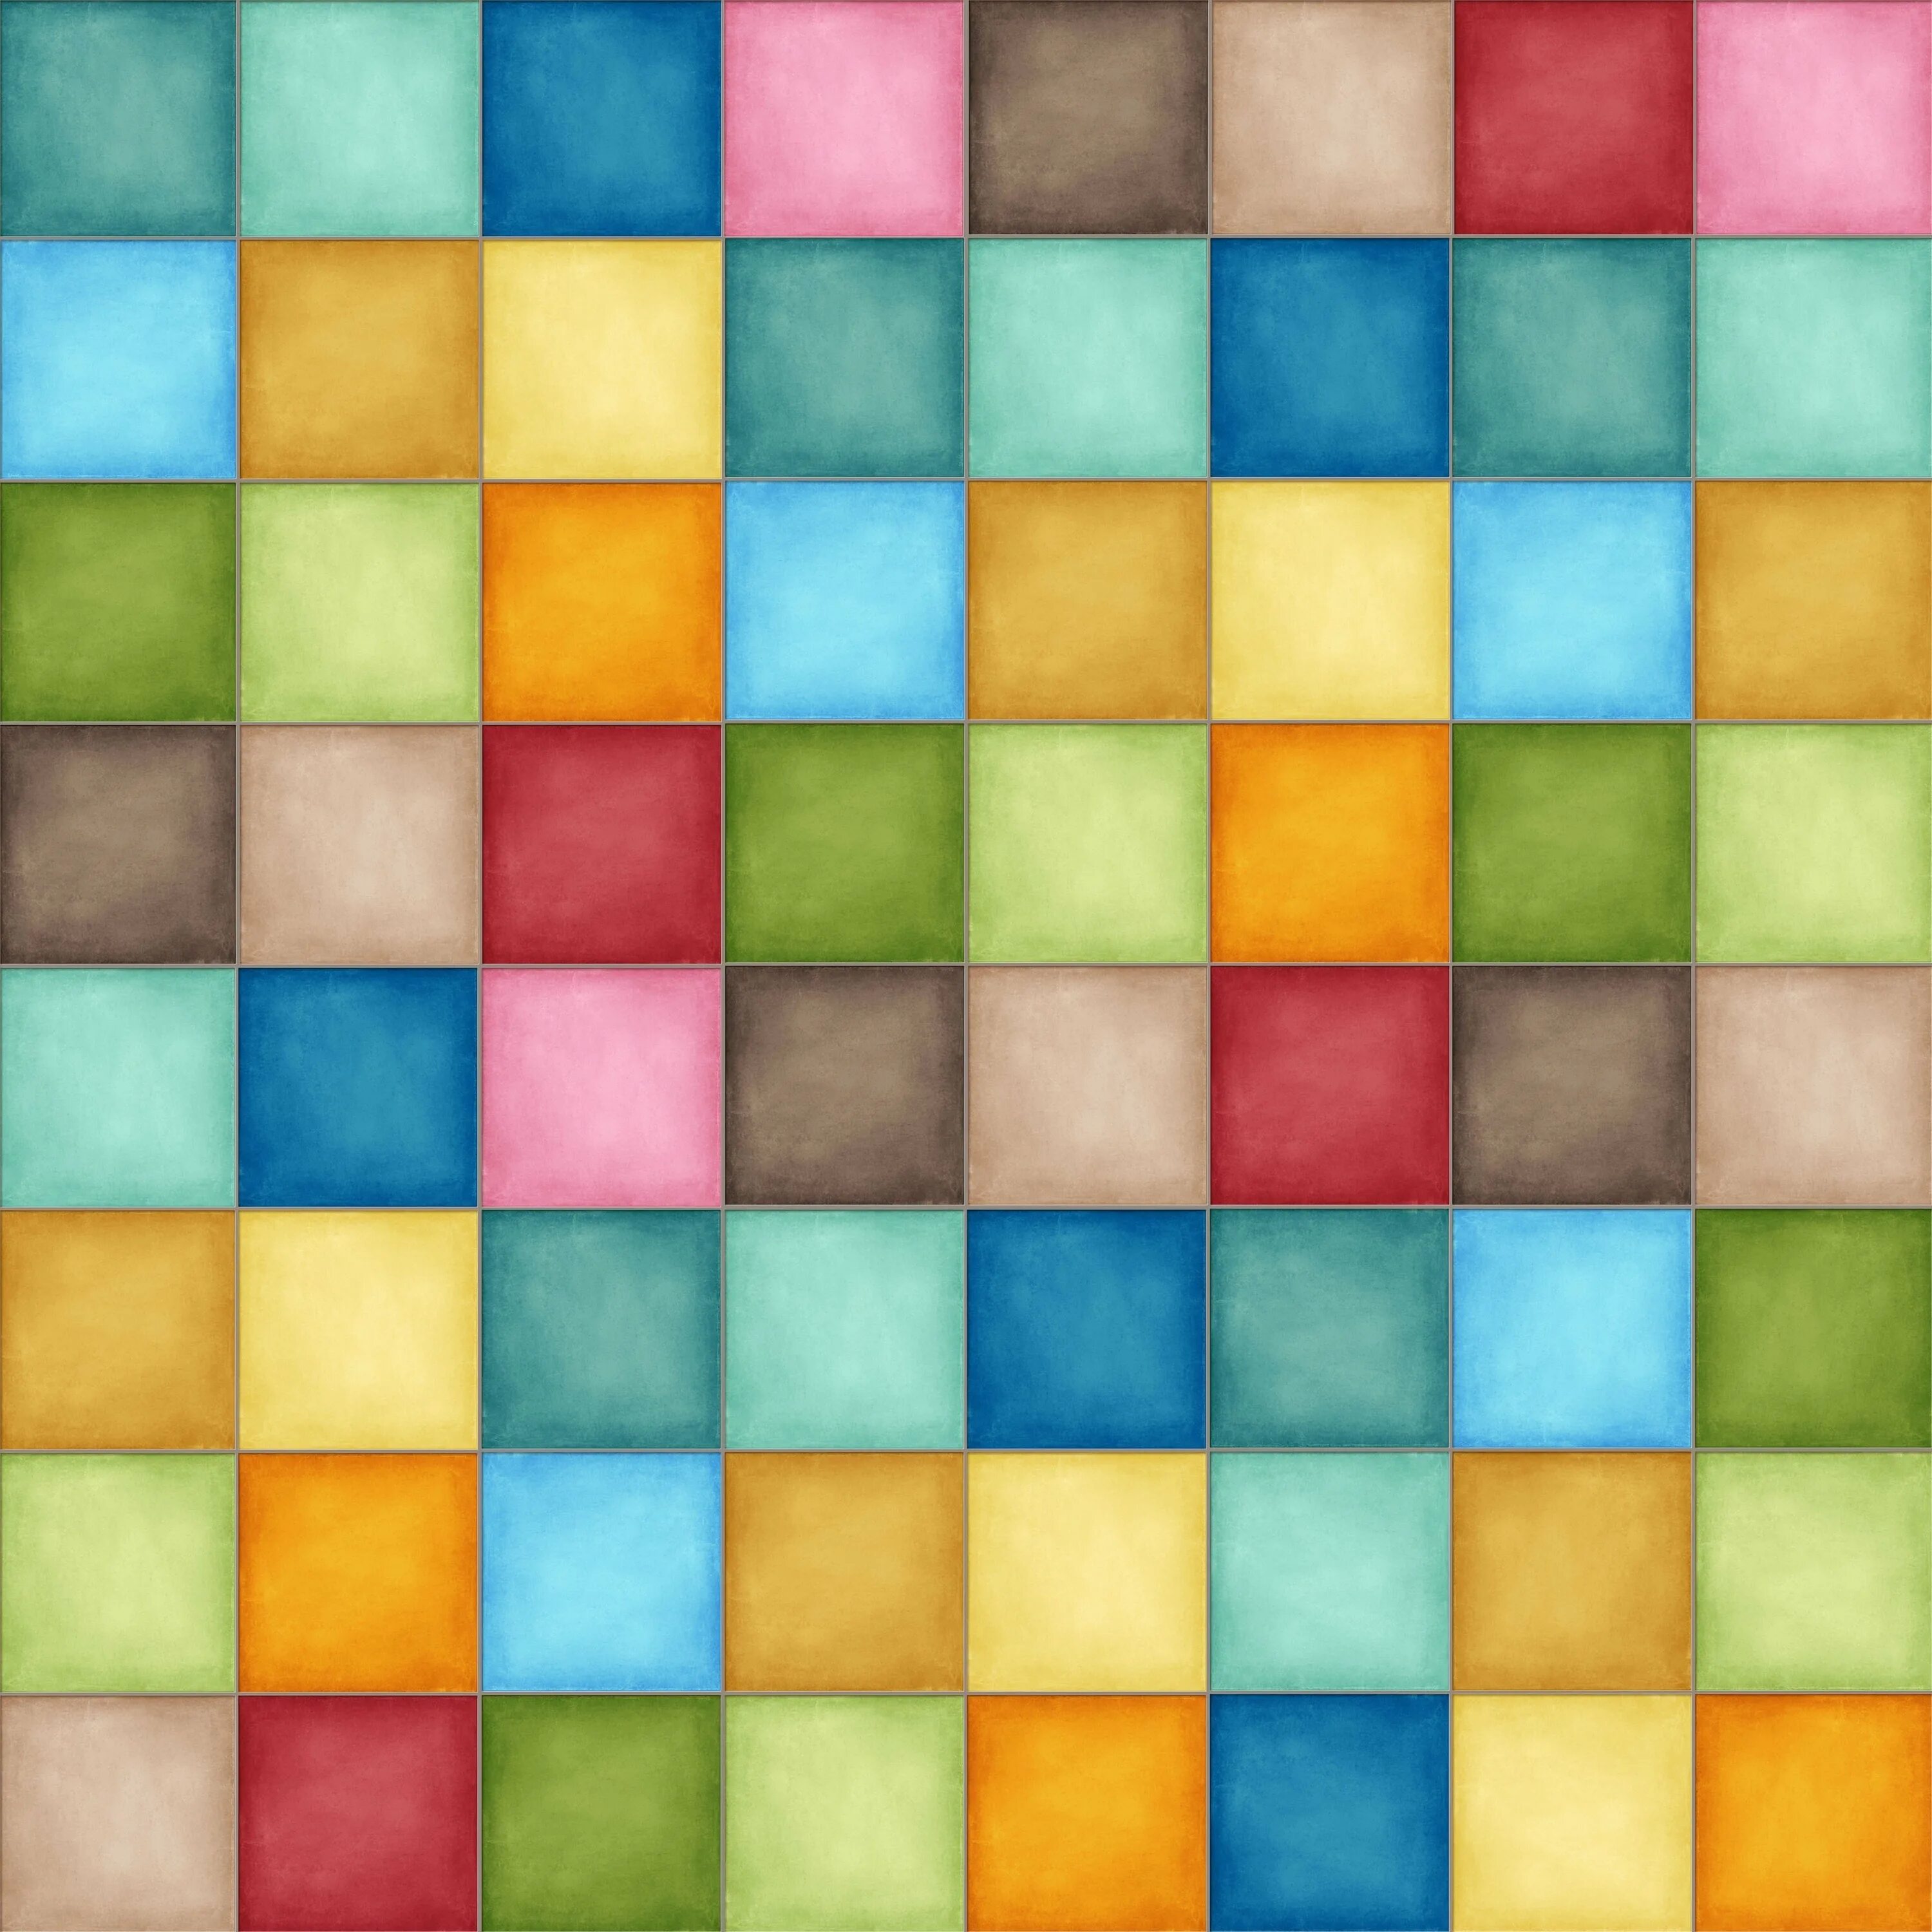 Цветные квадраты. Разноцветные квадрики. Разноцветные квадратики. Разноцветная плитка. Мозаичный квадрат